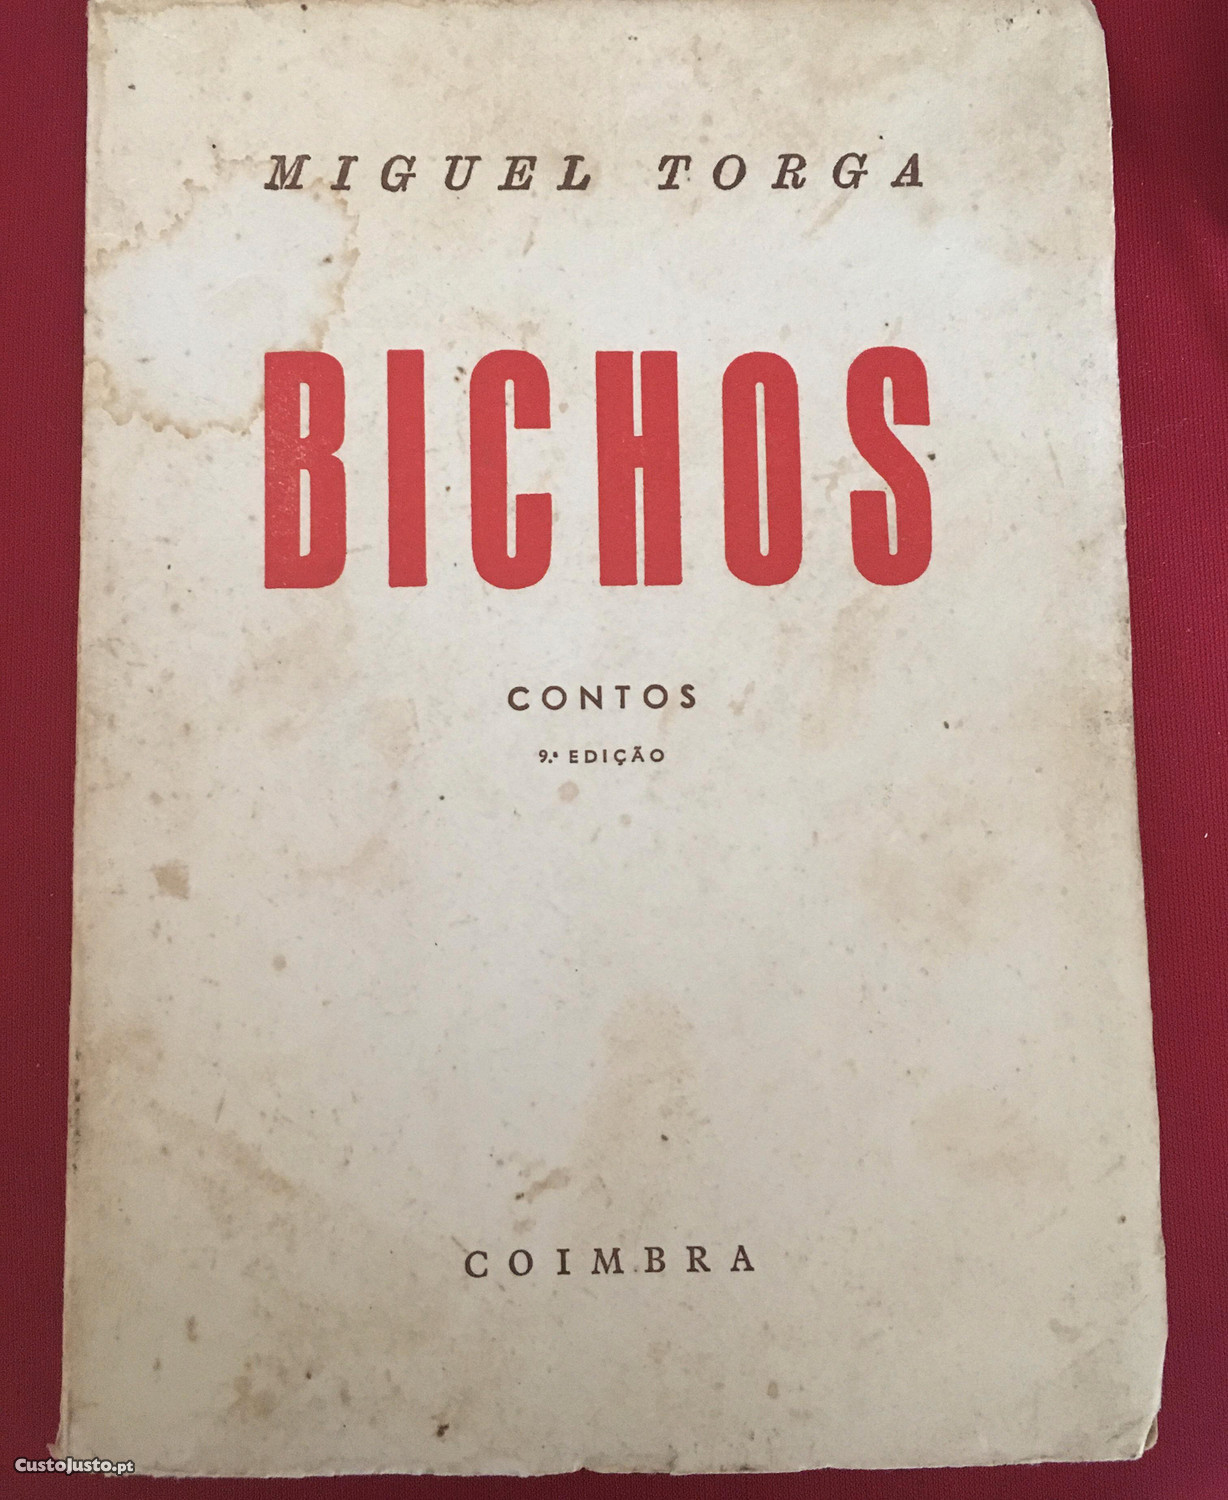 Bichos- contos de Miguel Torga